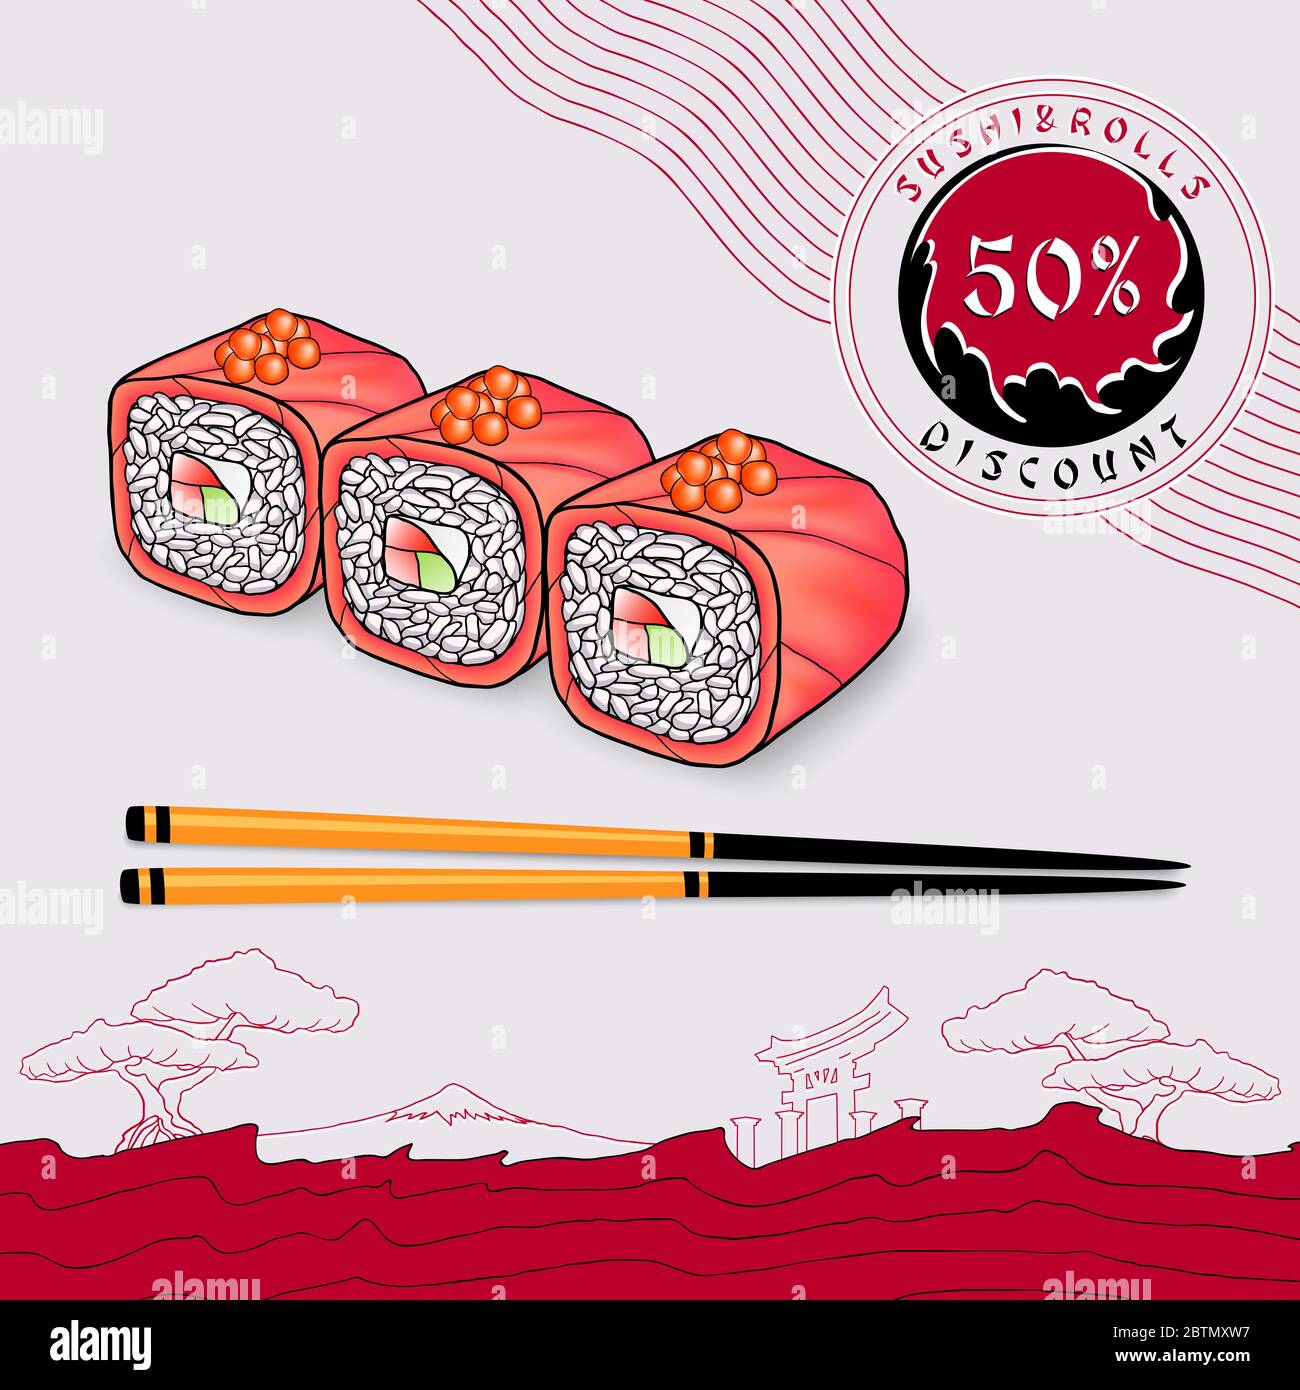 coupon de réduction pour la circulaire rouleaux japonais emballés dans du saumon avec caviar rouge sur une assiette gris clair avec baguettes Banque D'Images